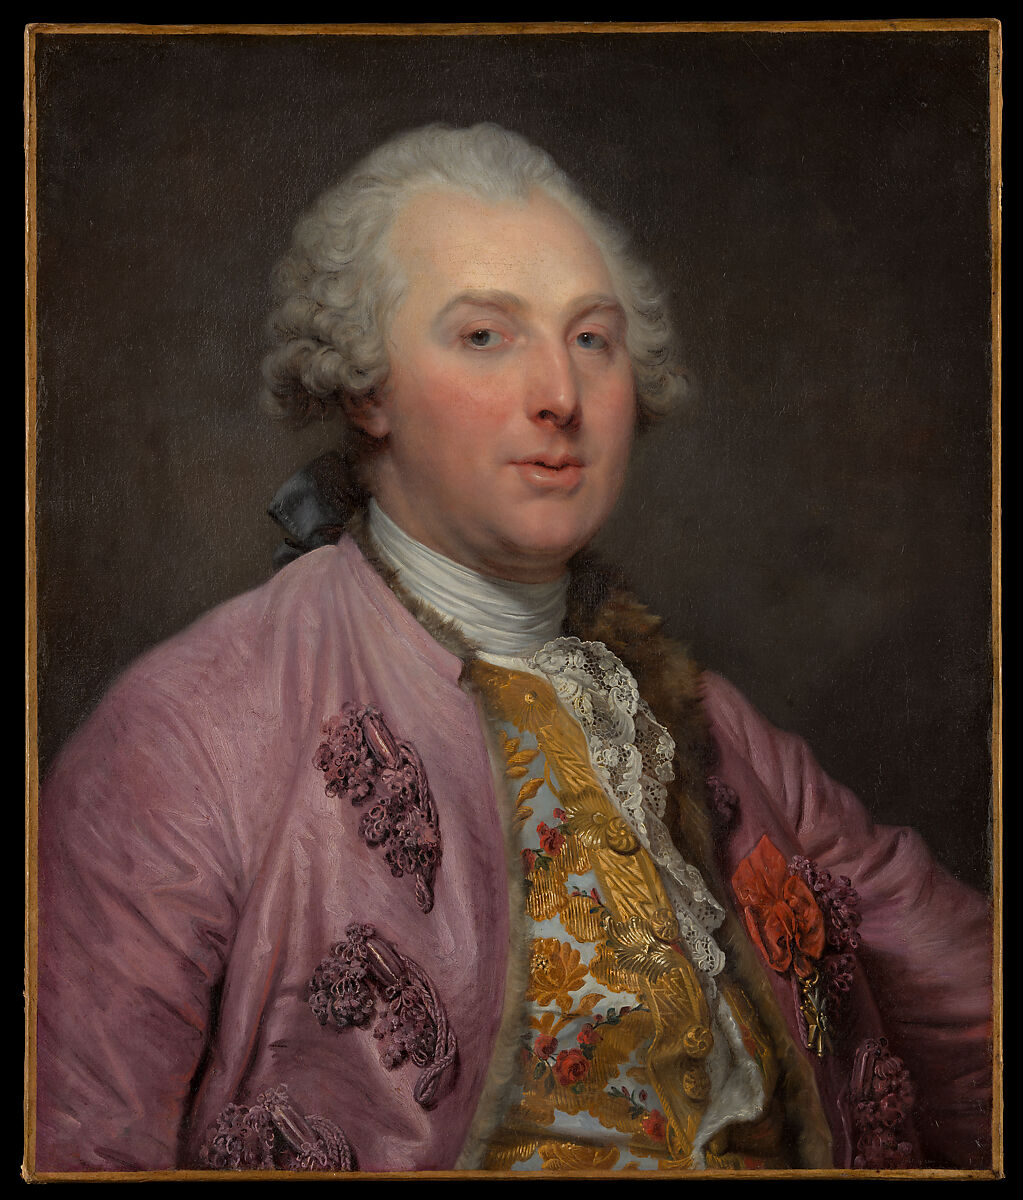 Charles Claude de Flahaut (1730–1809), Comte d'Angiviller, Jean-Baptiste Greuze (French, Tournus 1725–1805 Paris), Oil on canvas 